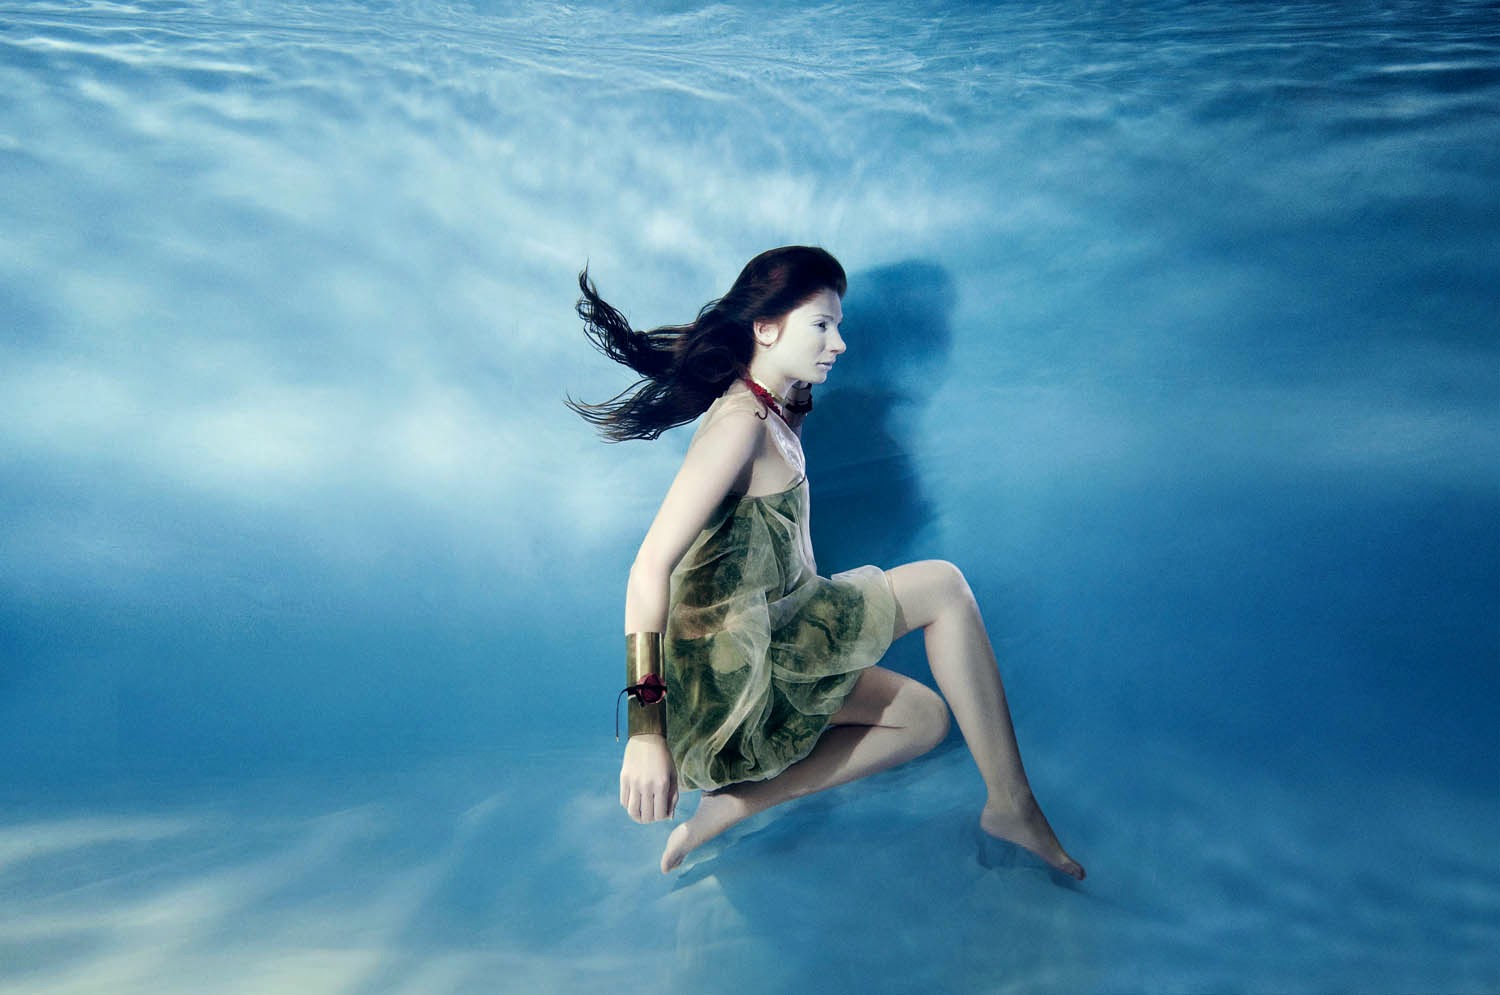 Imagem linda de domingo: editorial de moda embaixo d'água